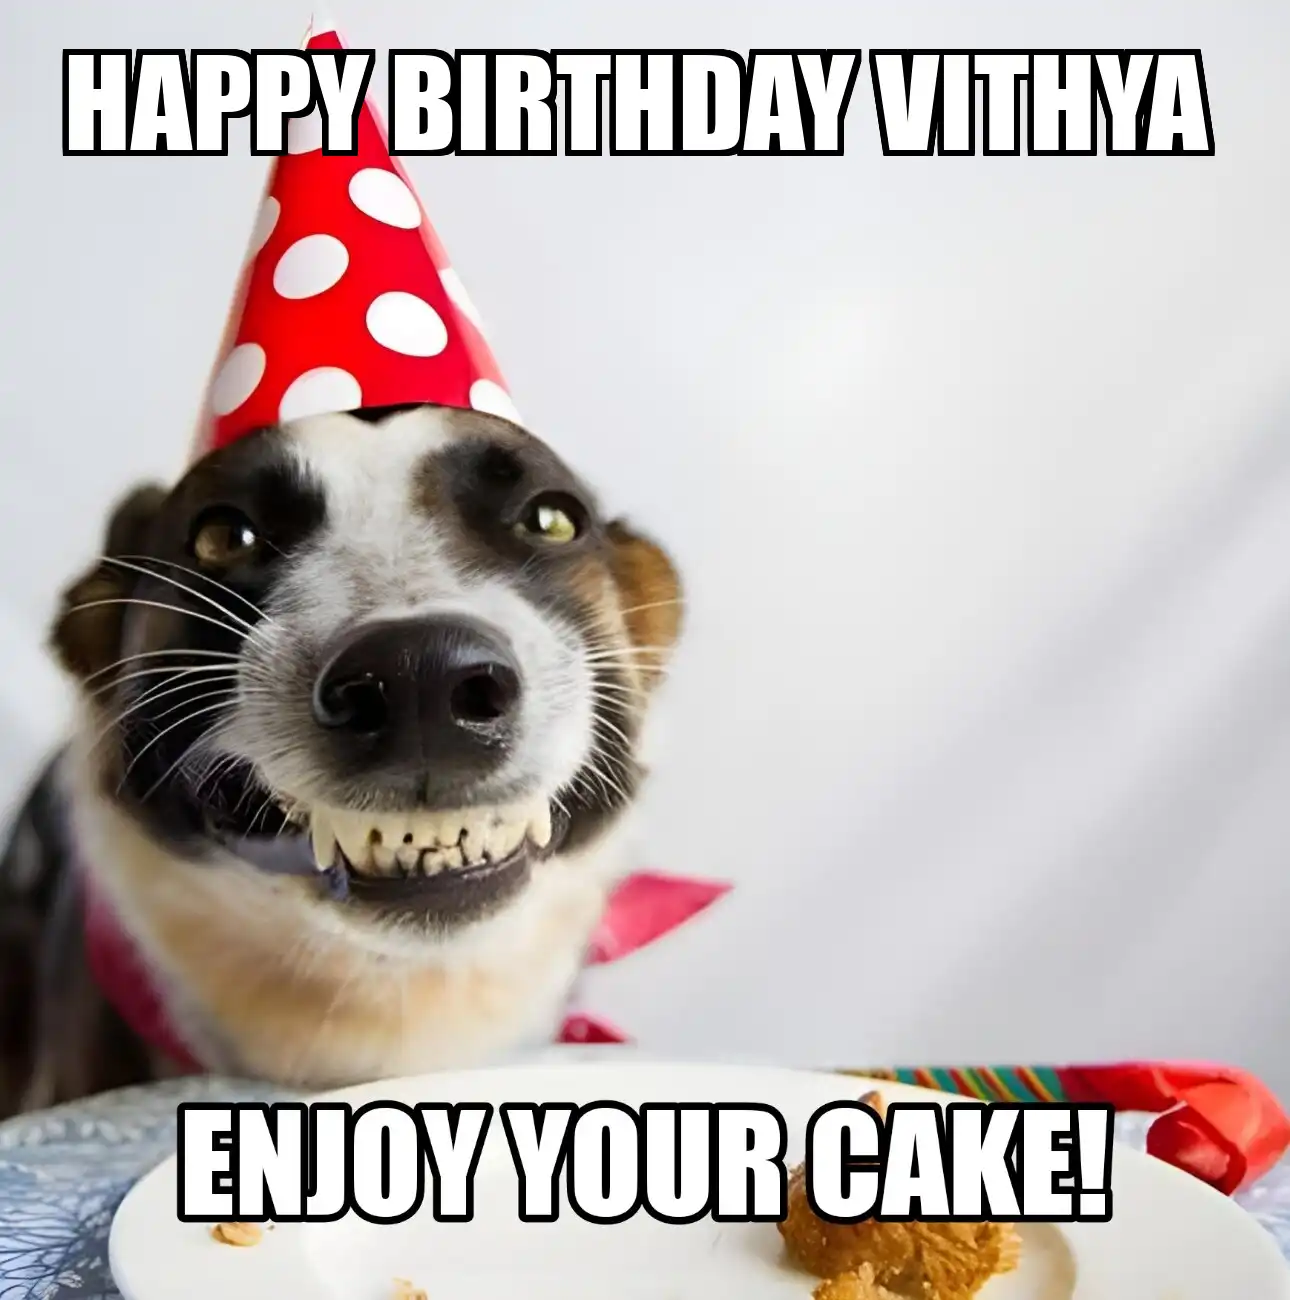 Happy Birthday Vithya Enjoy Your Cake Dog Meme